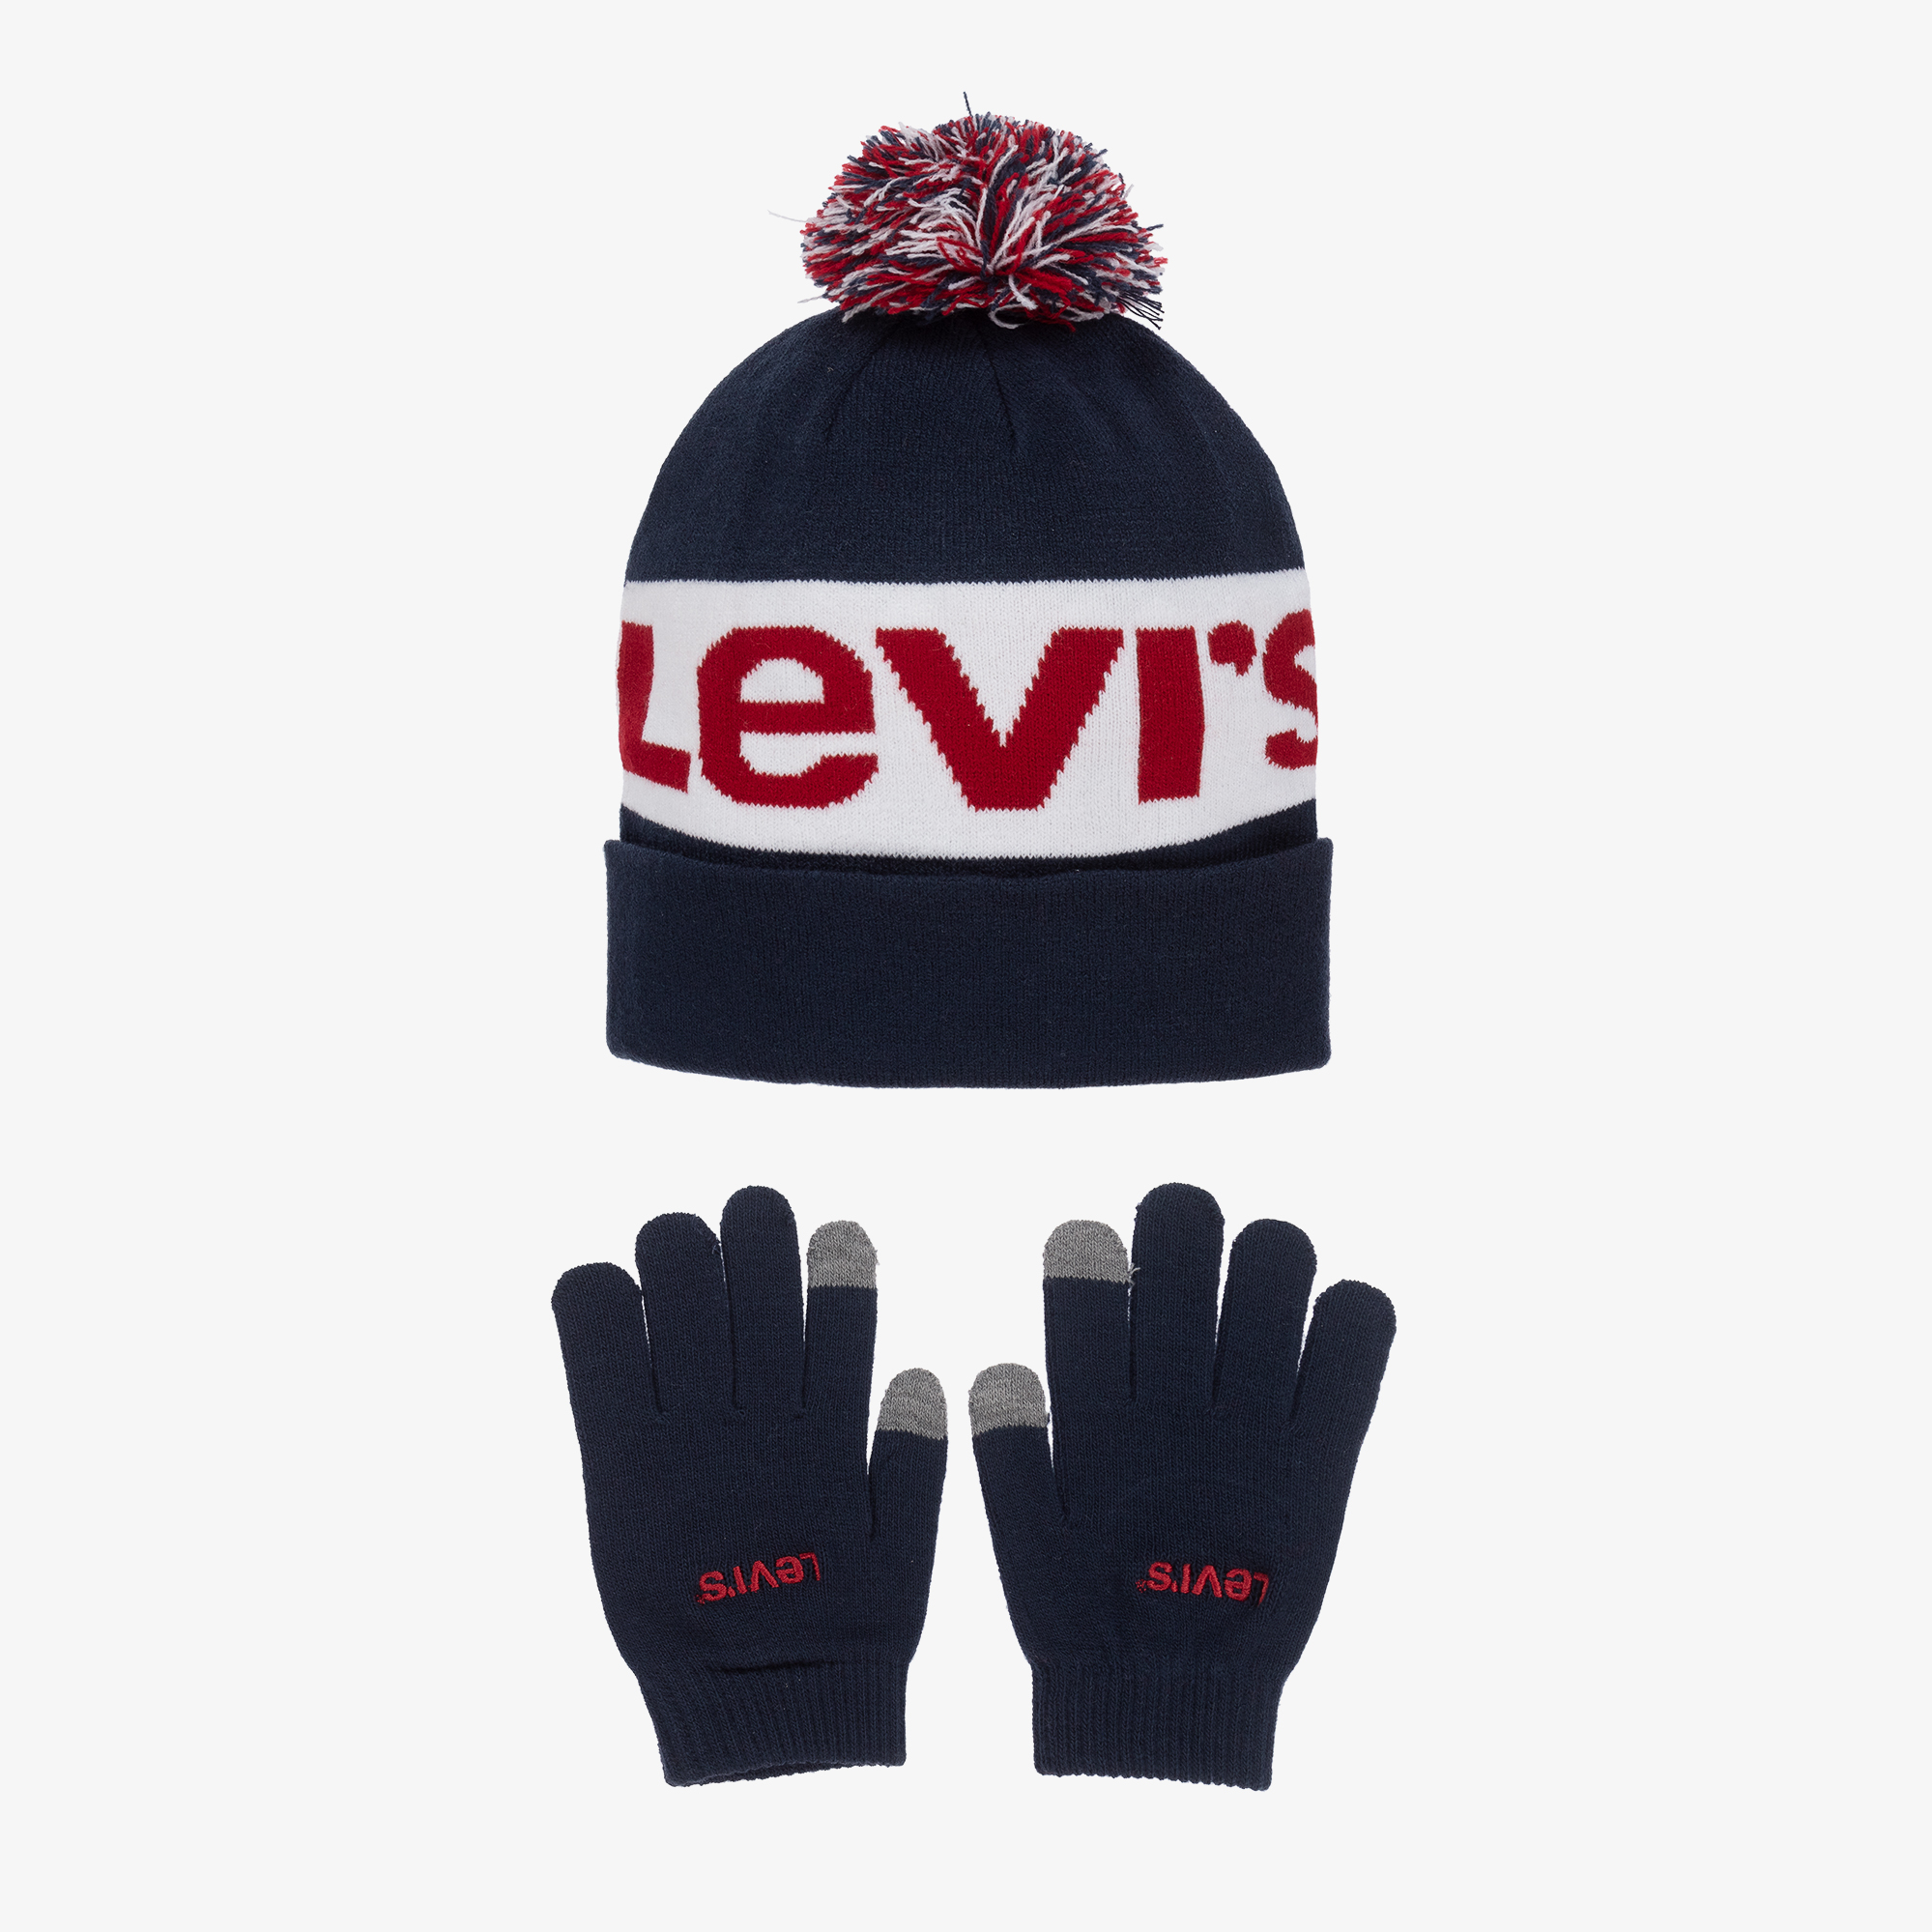 Levi's - Ensemble bonnet et gants gris